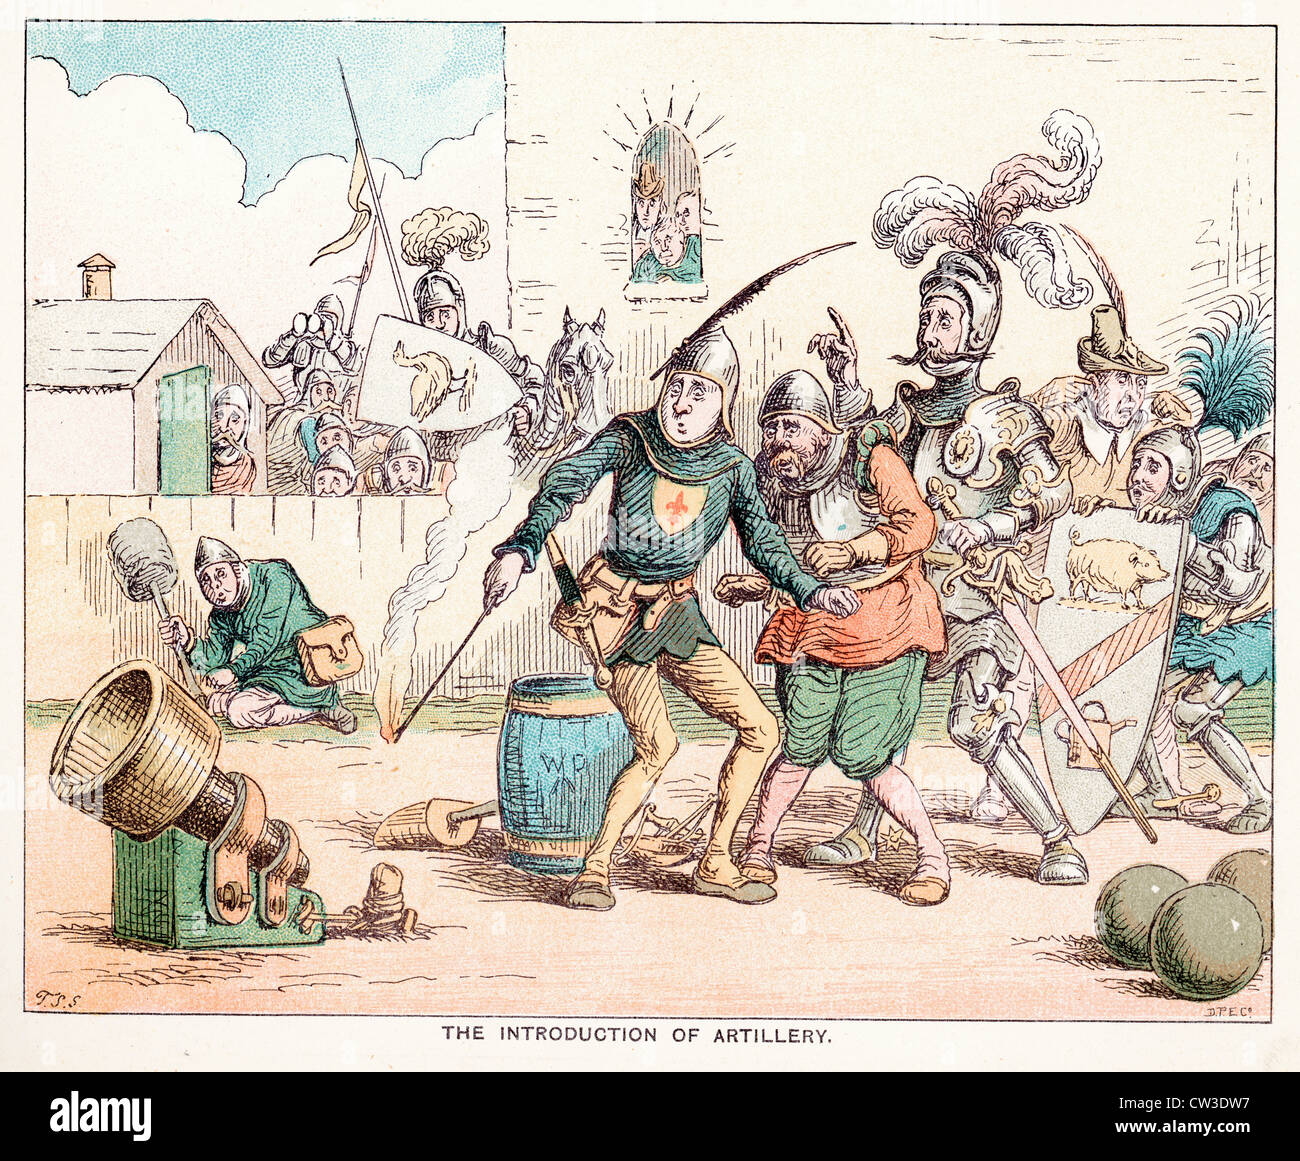 Sketch cómicos por T S Seccombe mostrando la introducción de la artillería en la edad media Foto de stock